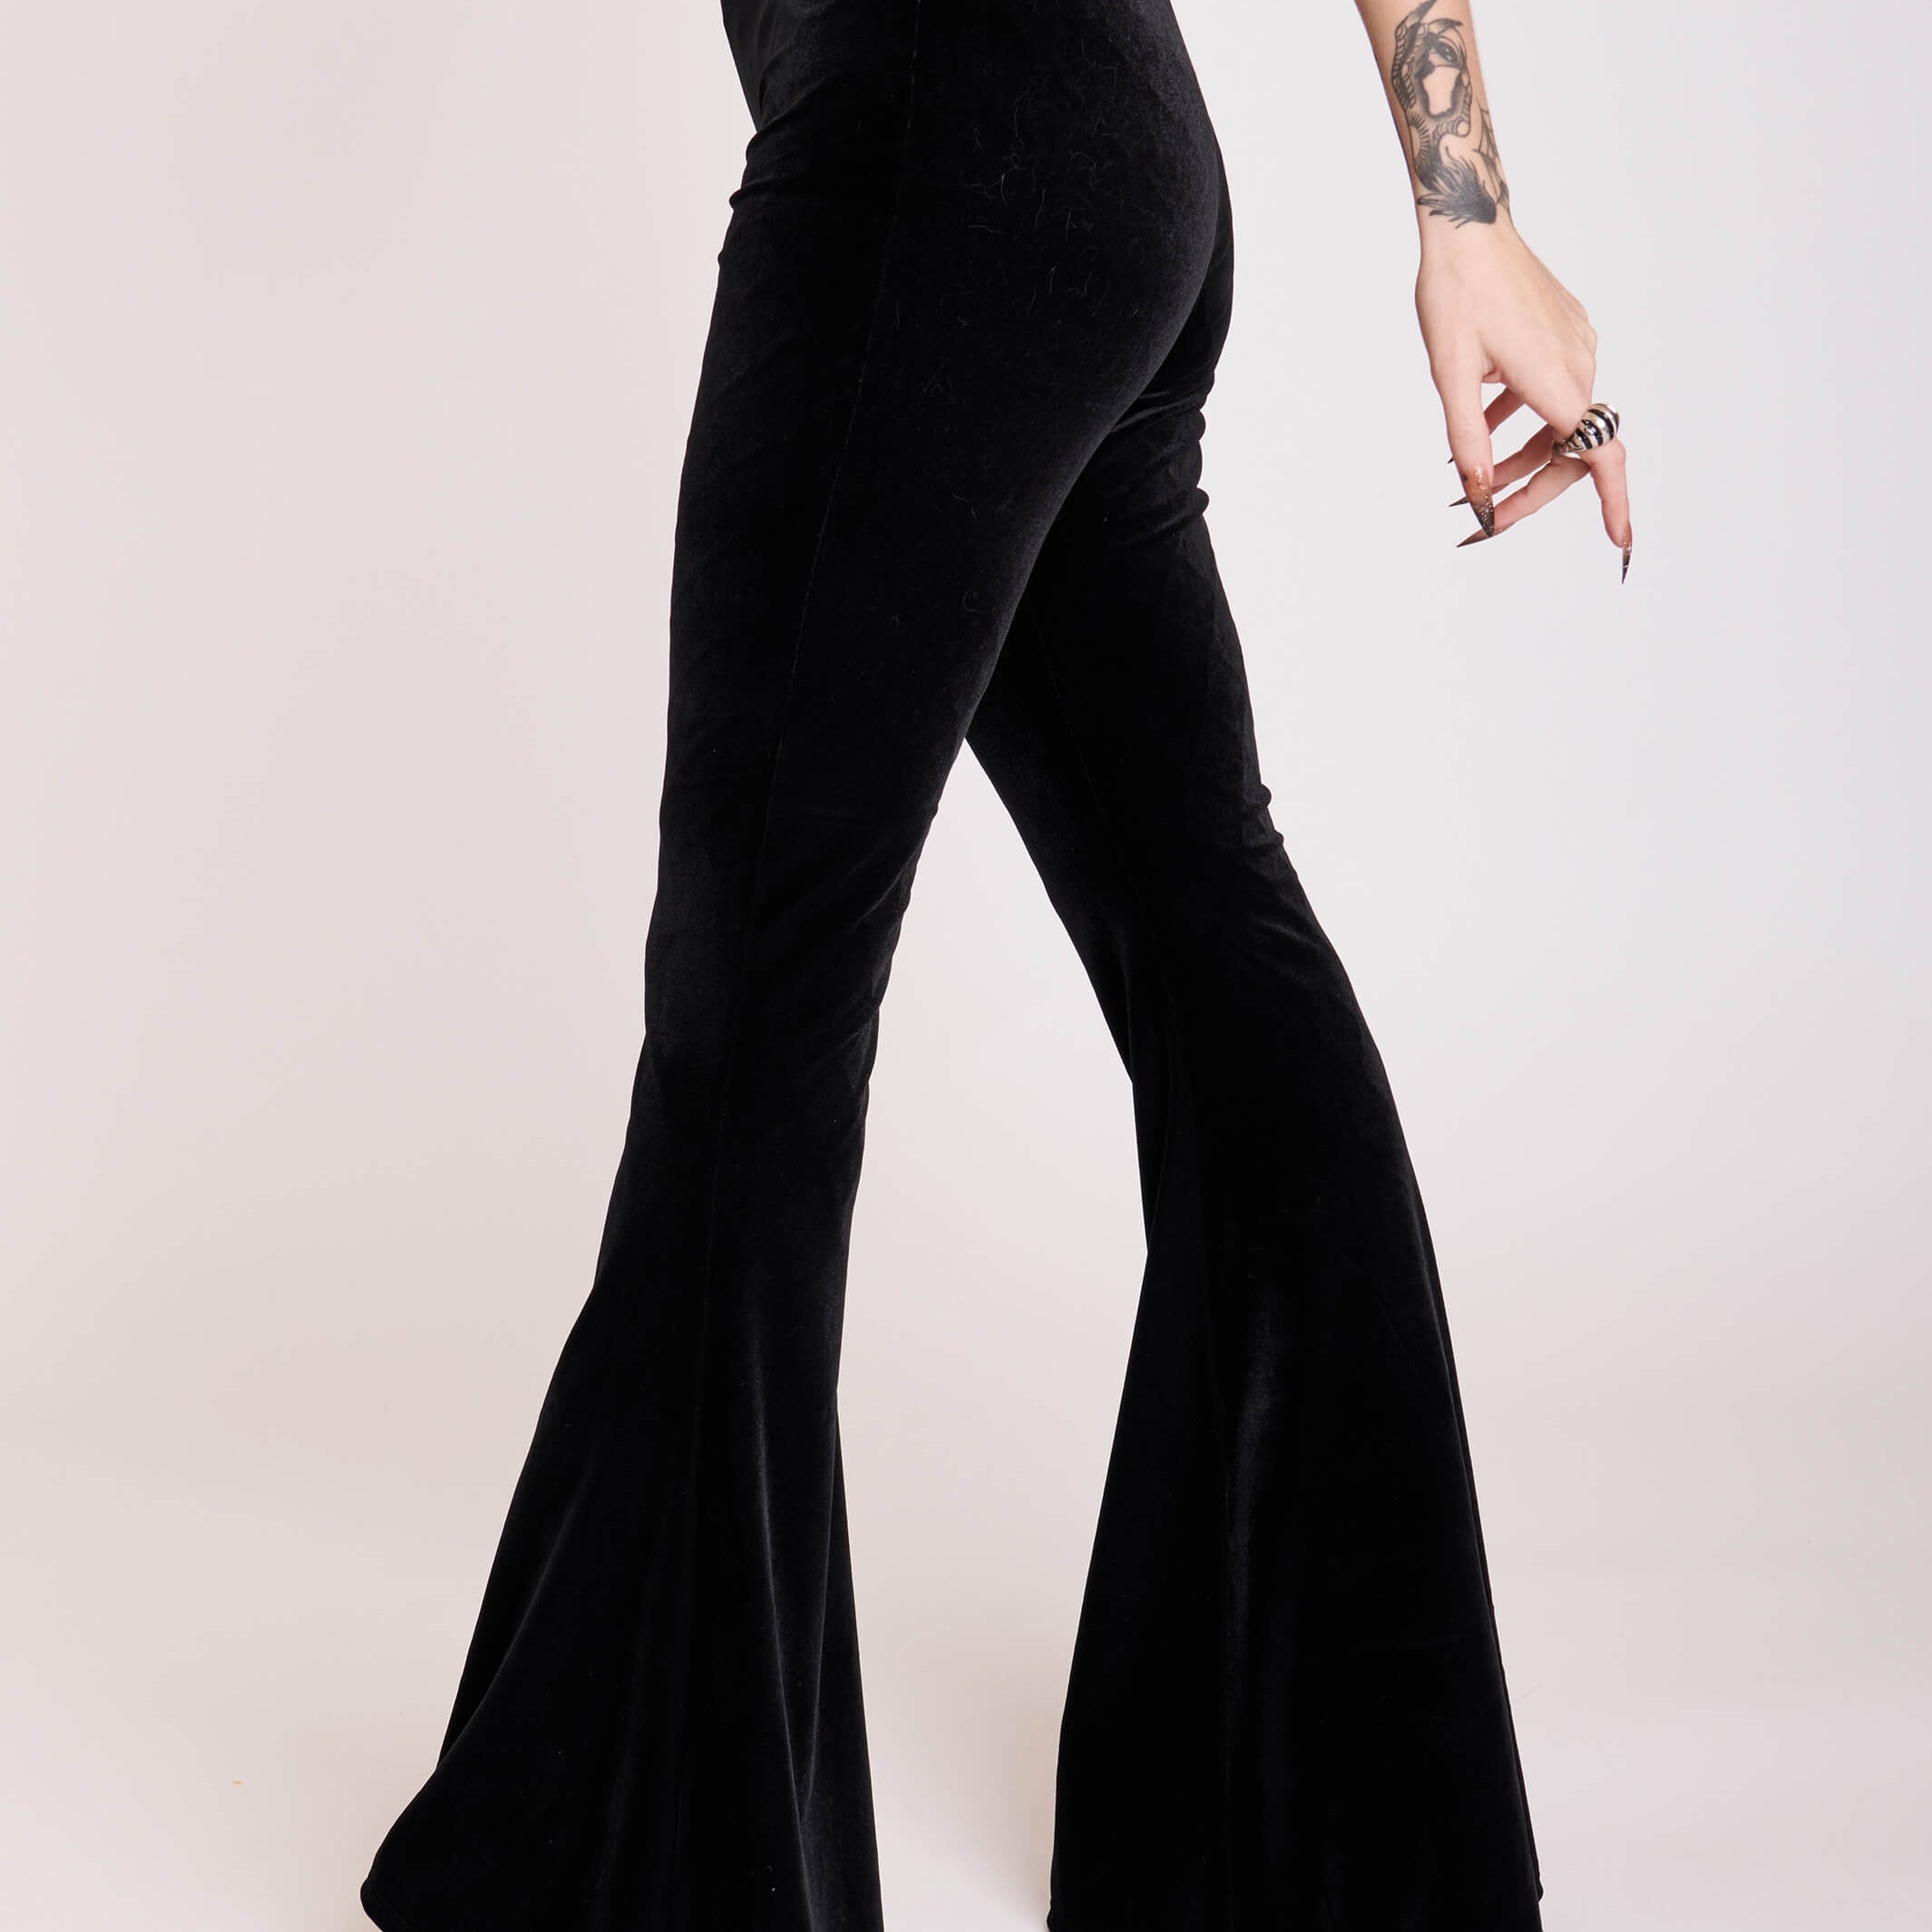 Gothic Black stretch velvet flared legging pants. 